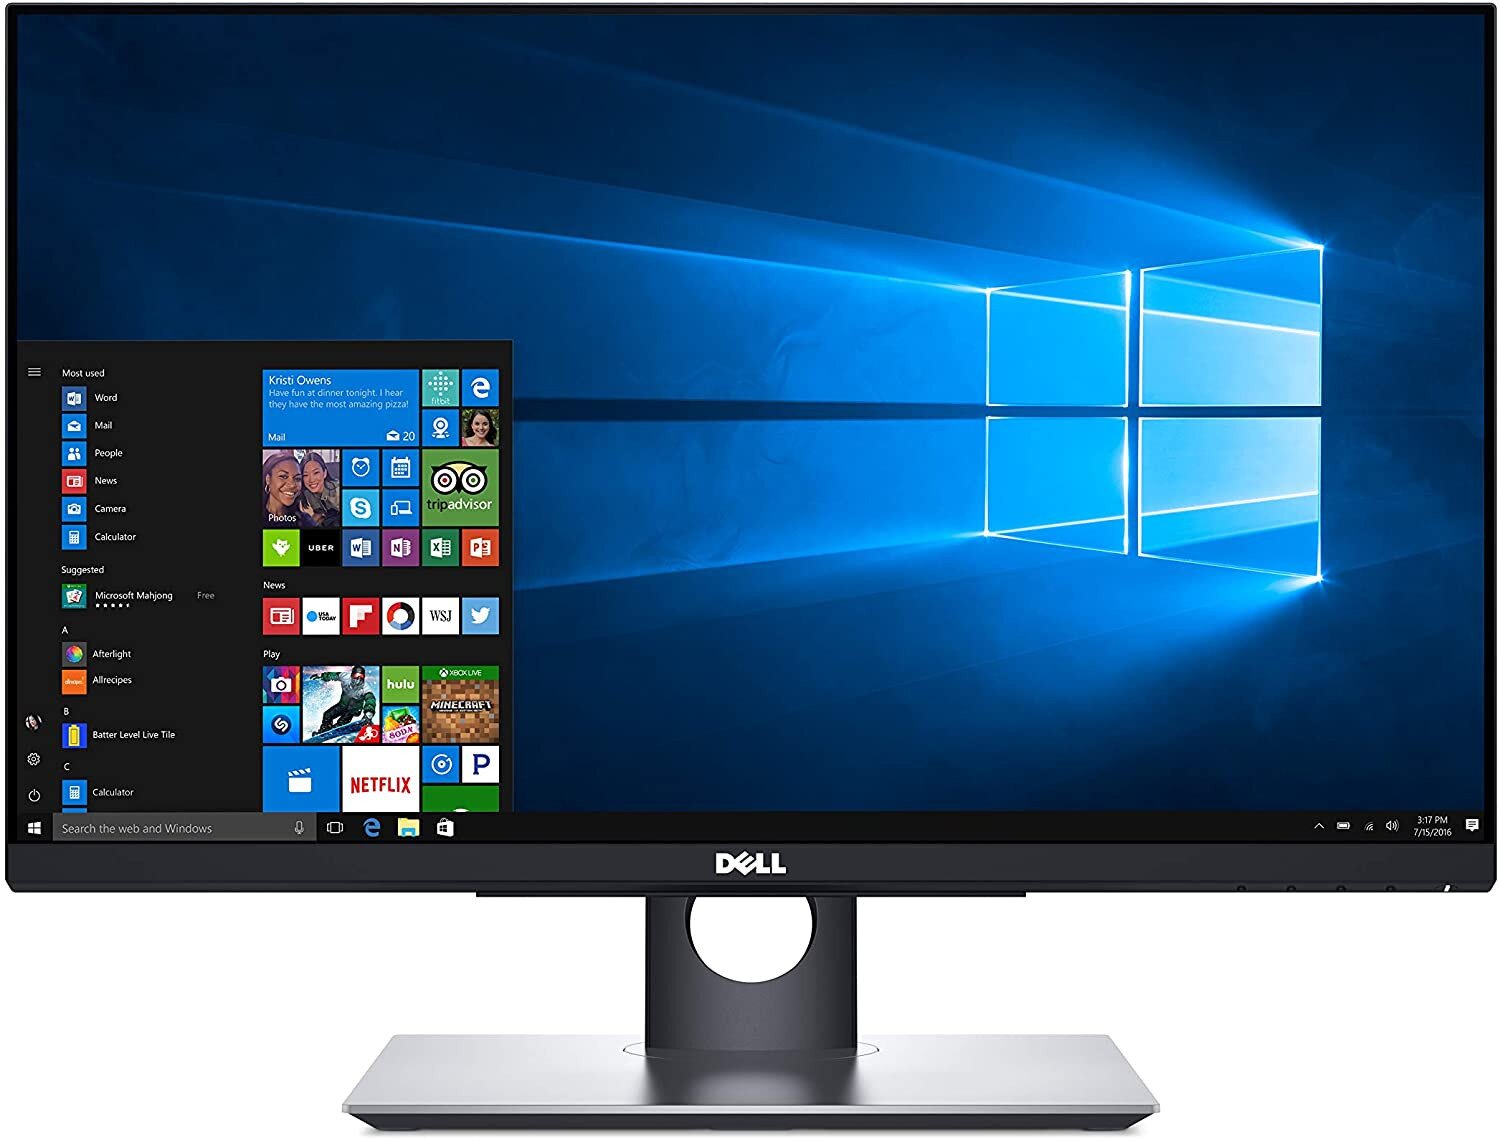 Buy Dell 24 Touch Screen Monitor P2418ht Online In Pakistan Tejarpk